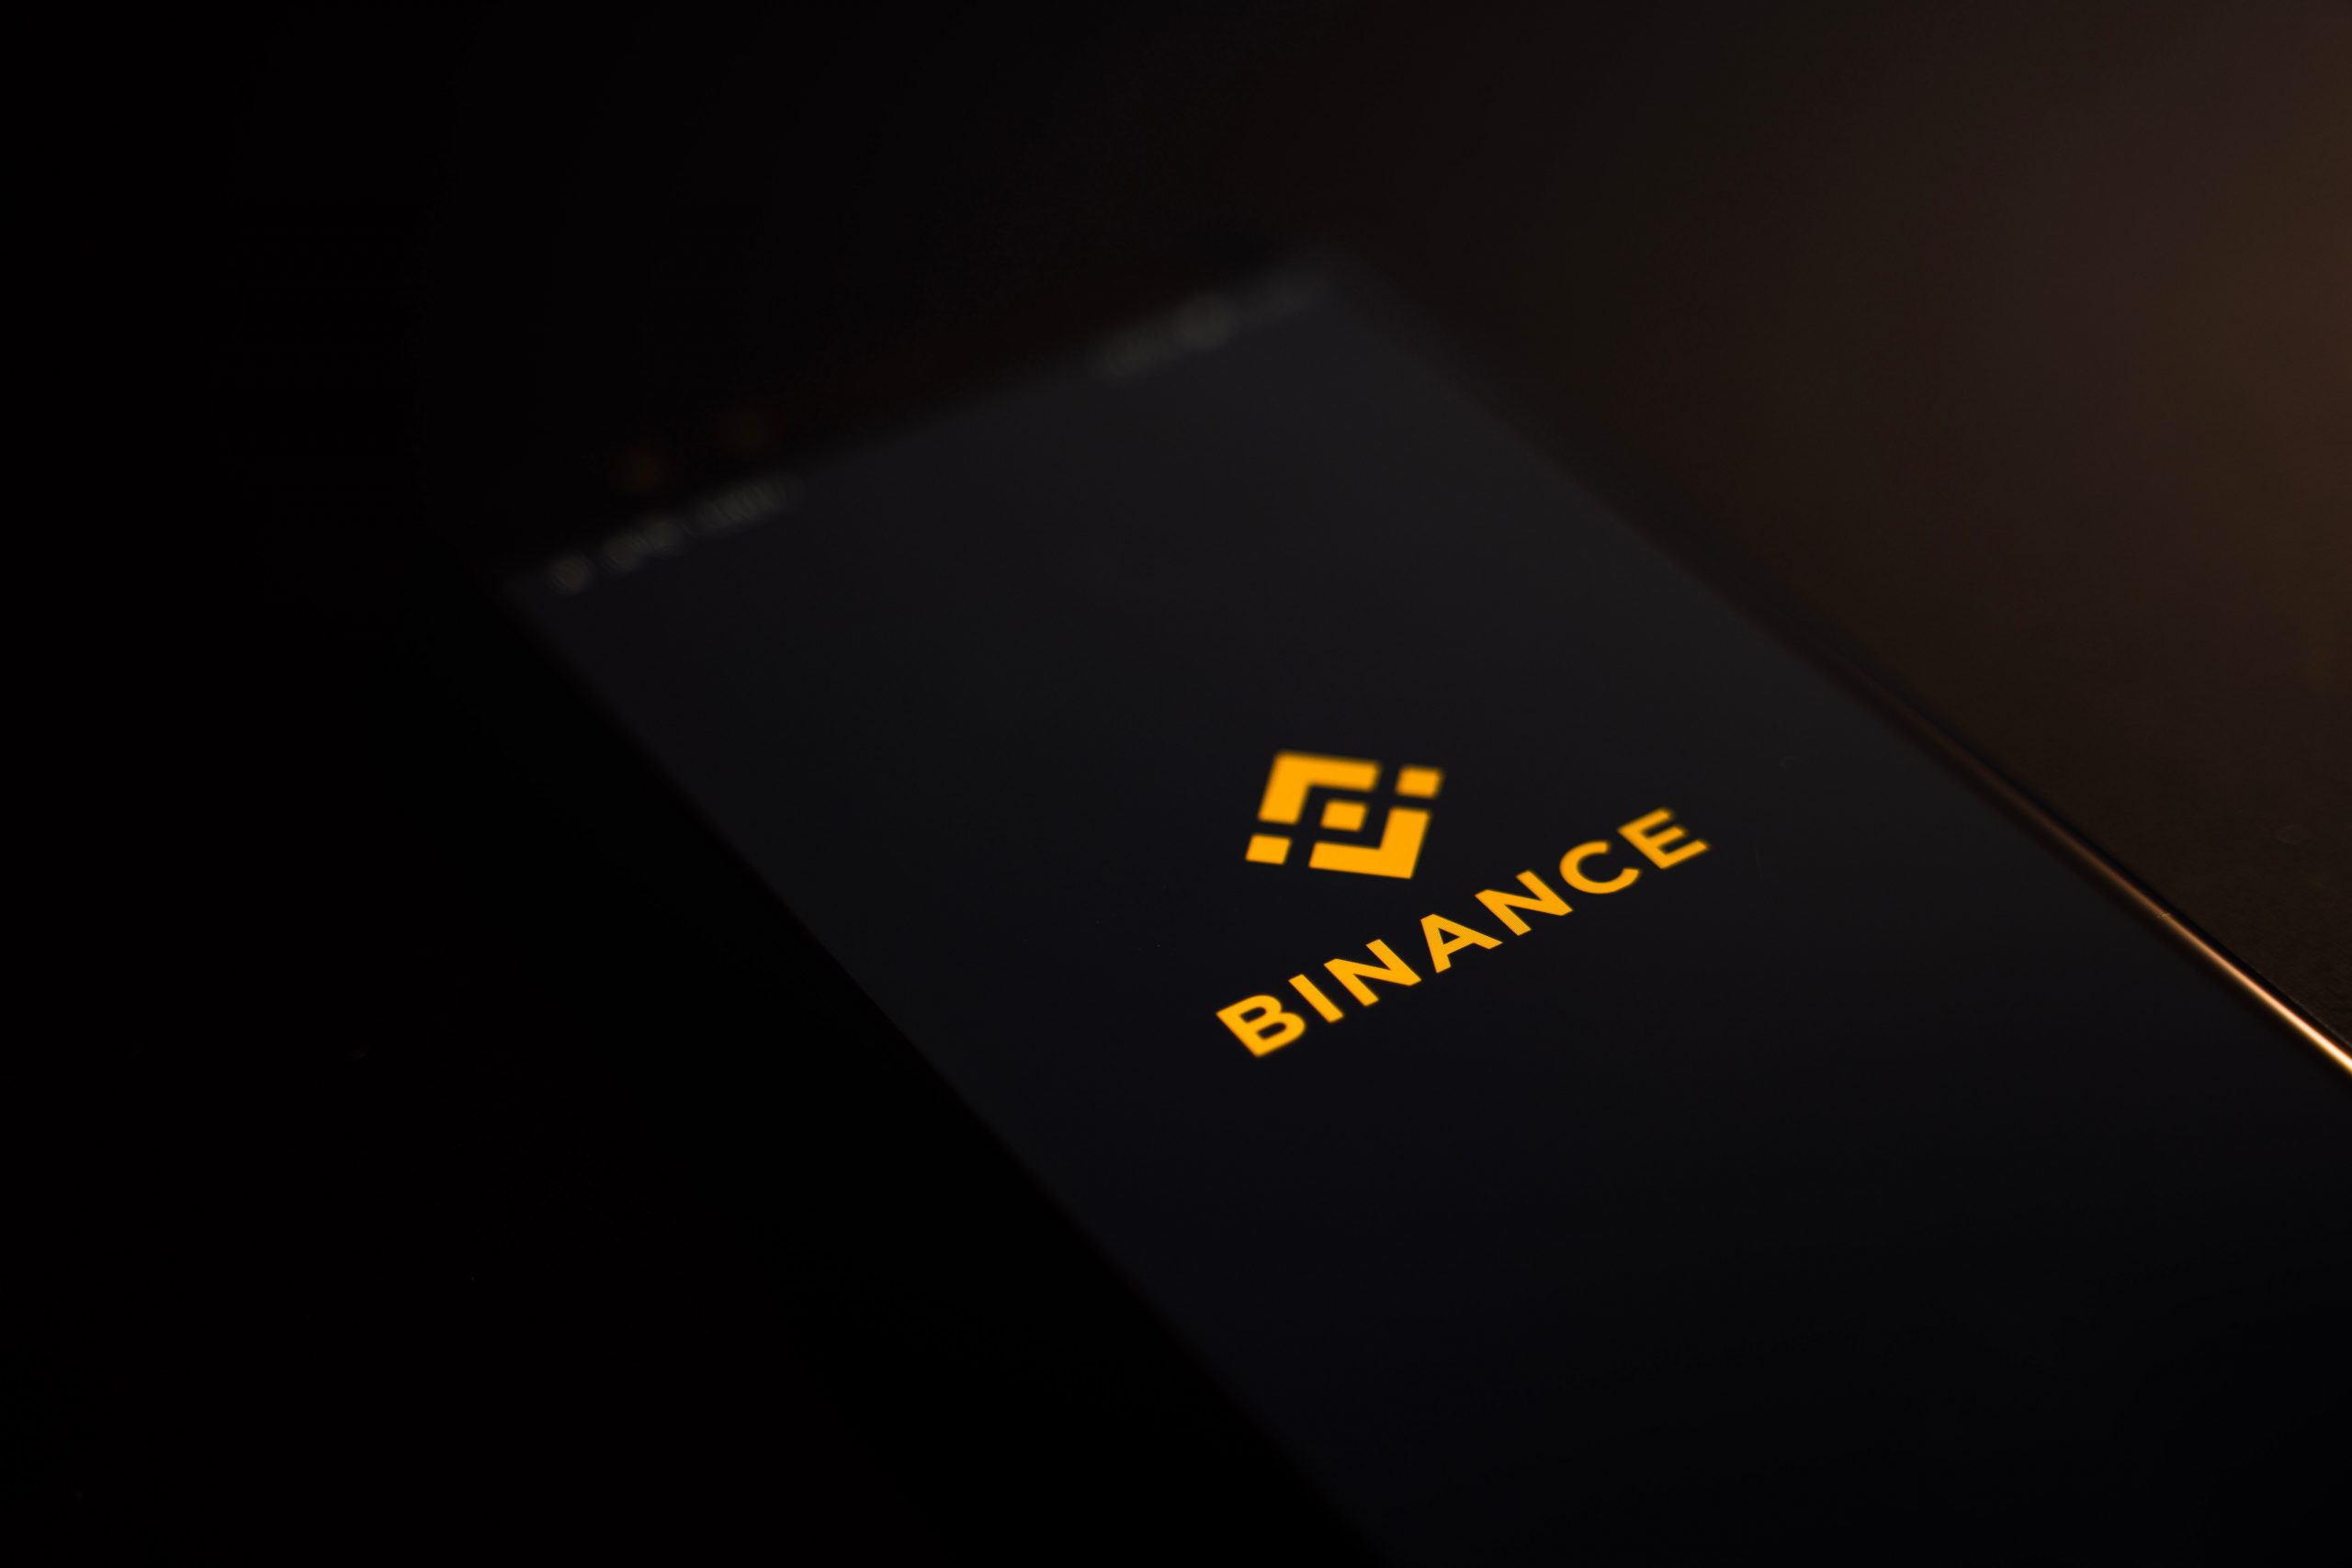 Binance launches tesla stock token coinbase merger